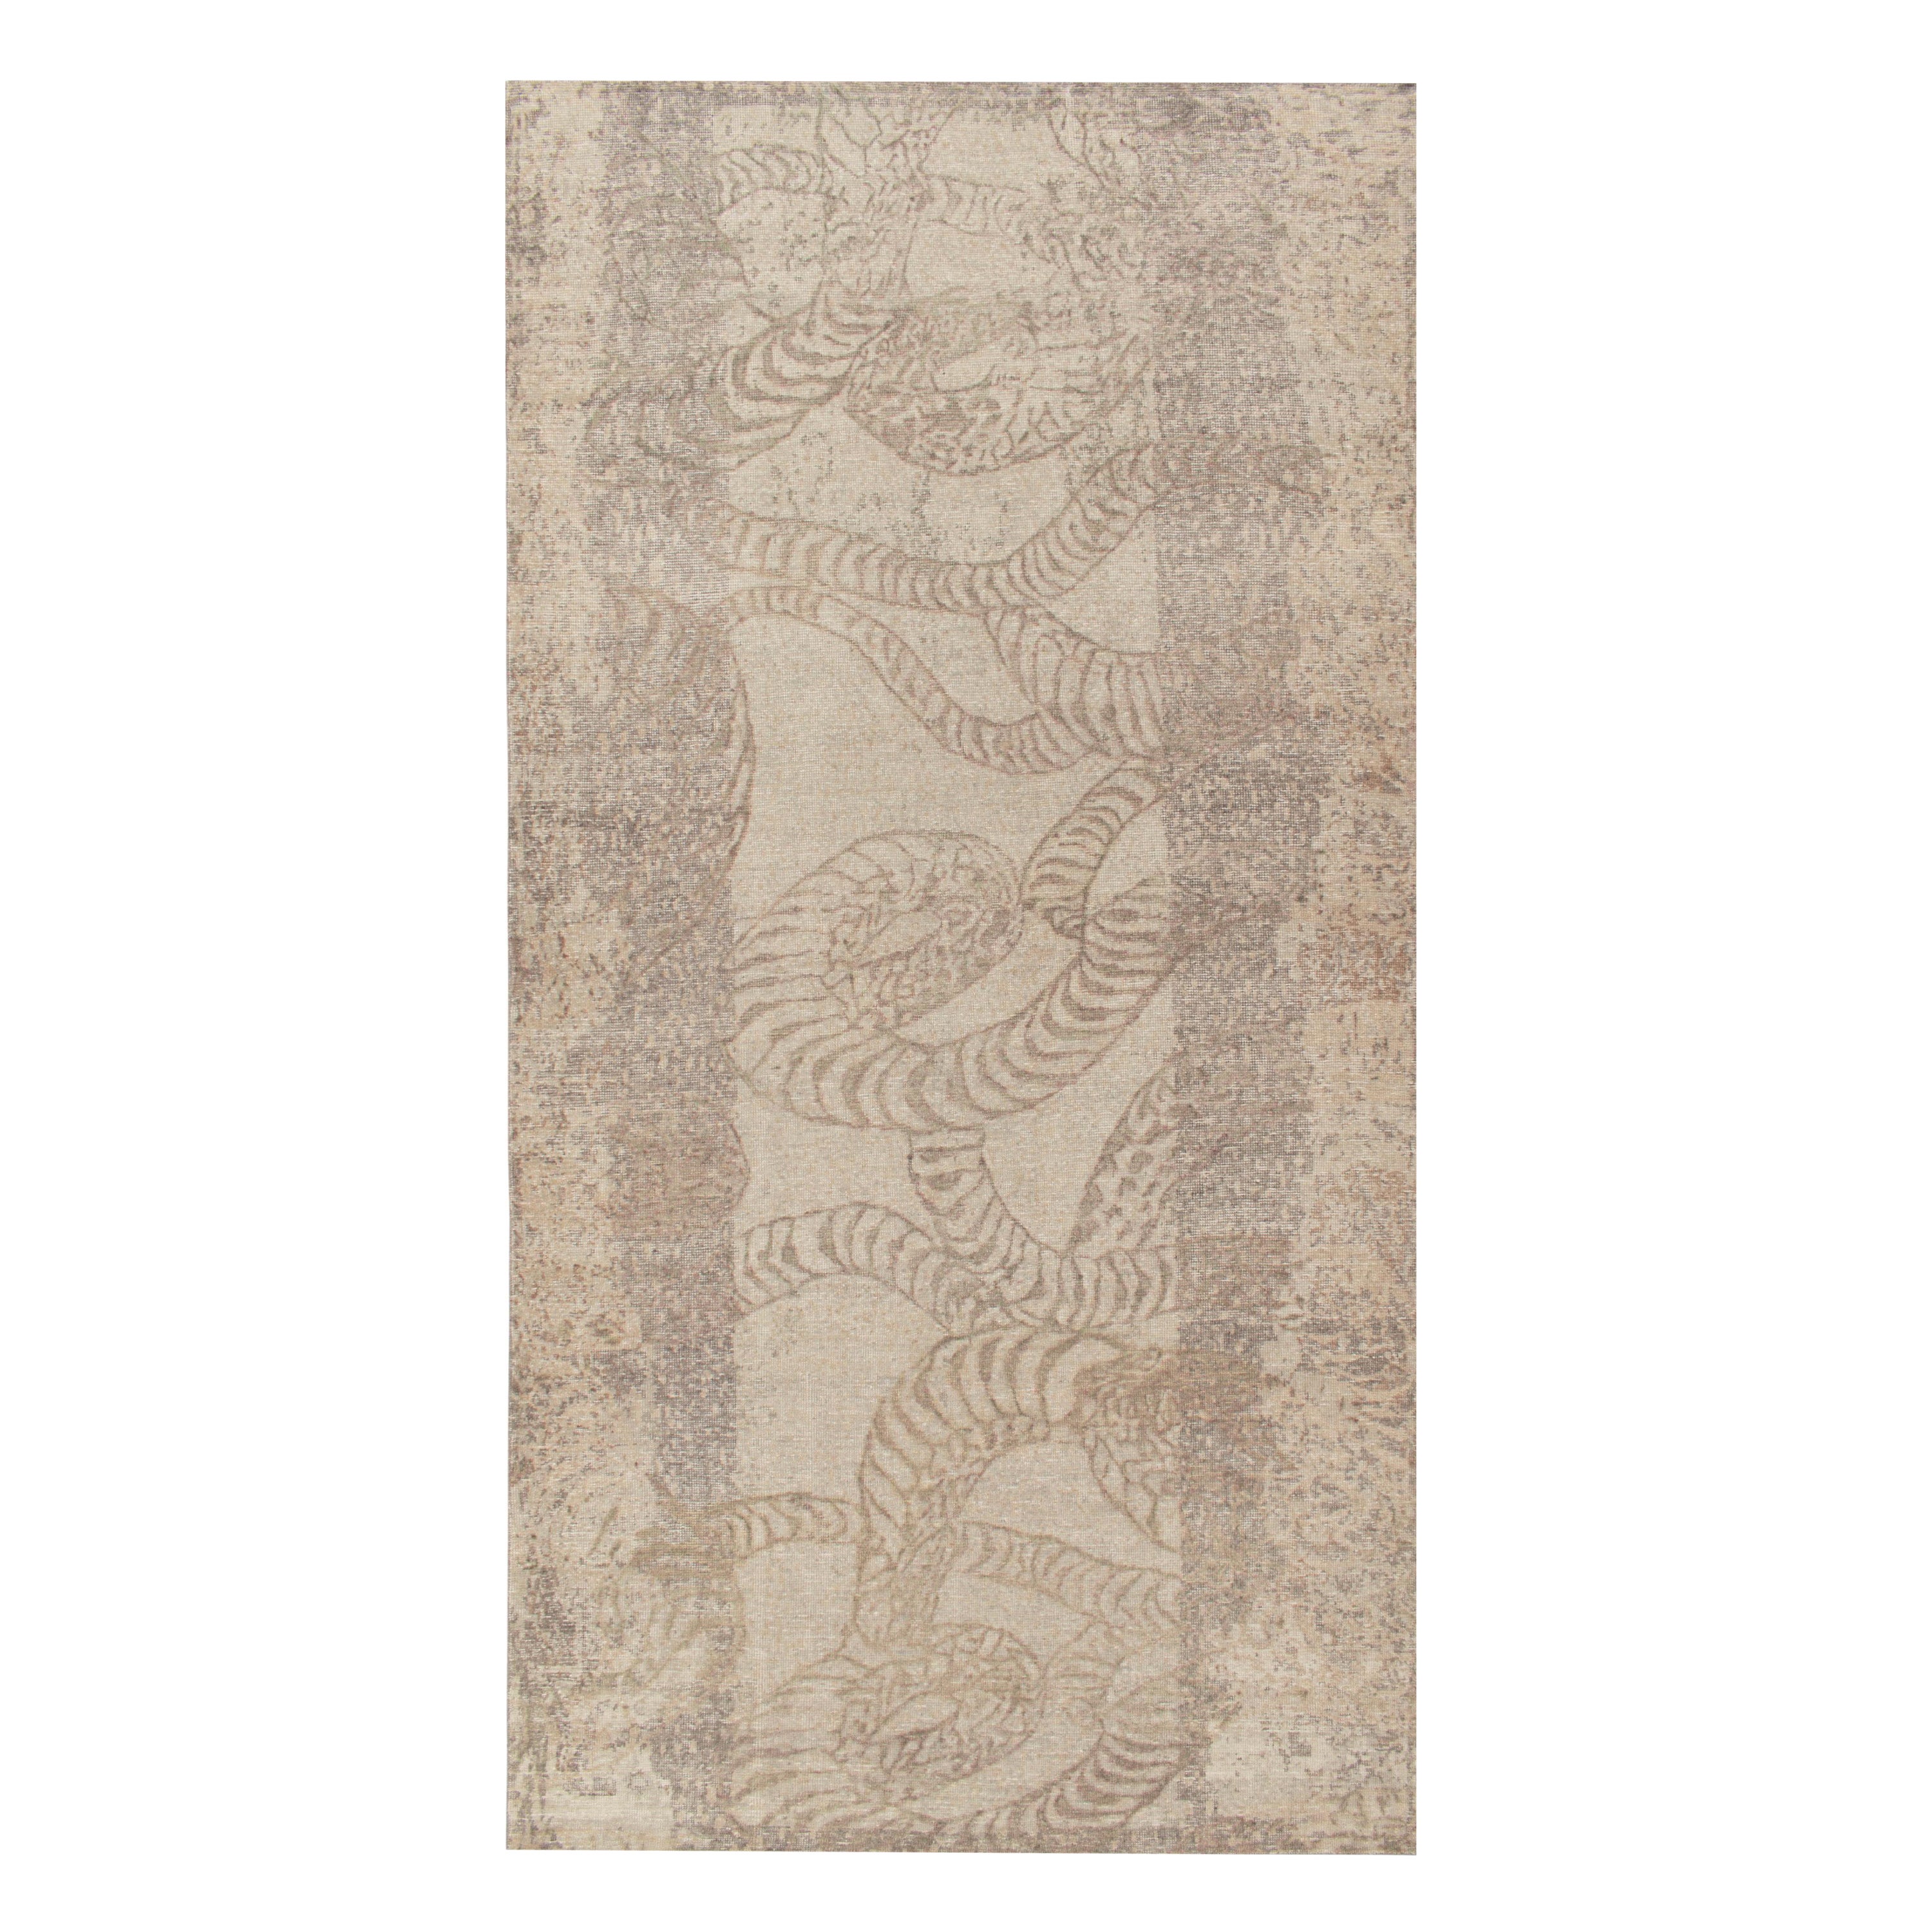 Rug & Kilim's Distressed Style Abstract Rug in Beige-Brown & Gray Pattern (Tapis abstrait en beige, marron et gris) en vente